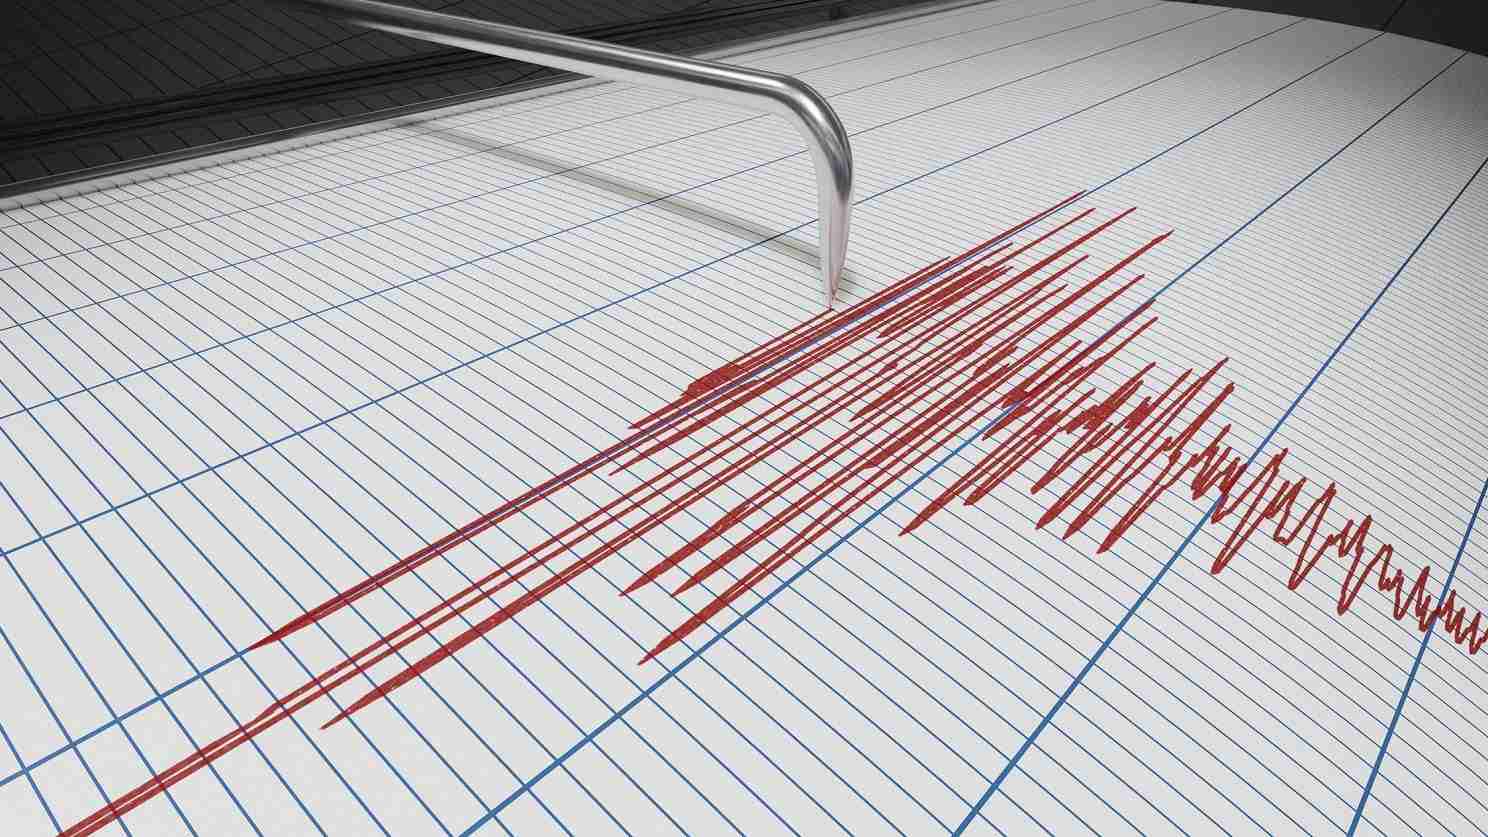 Scosse di terremoto nel Catanese, nessun danno